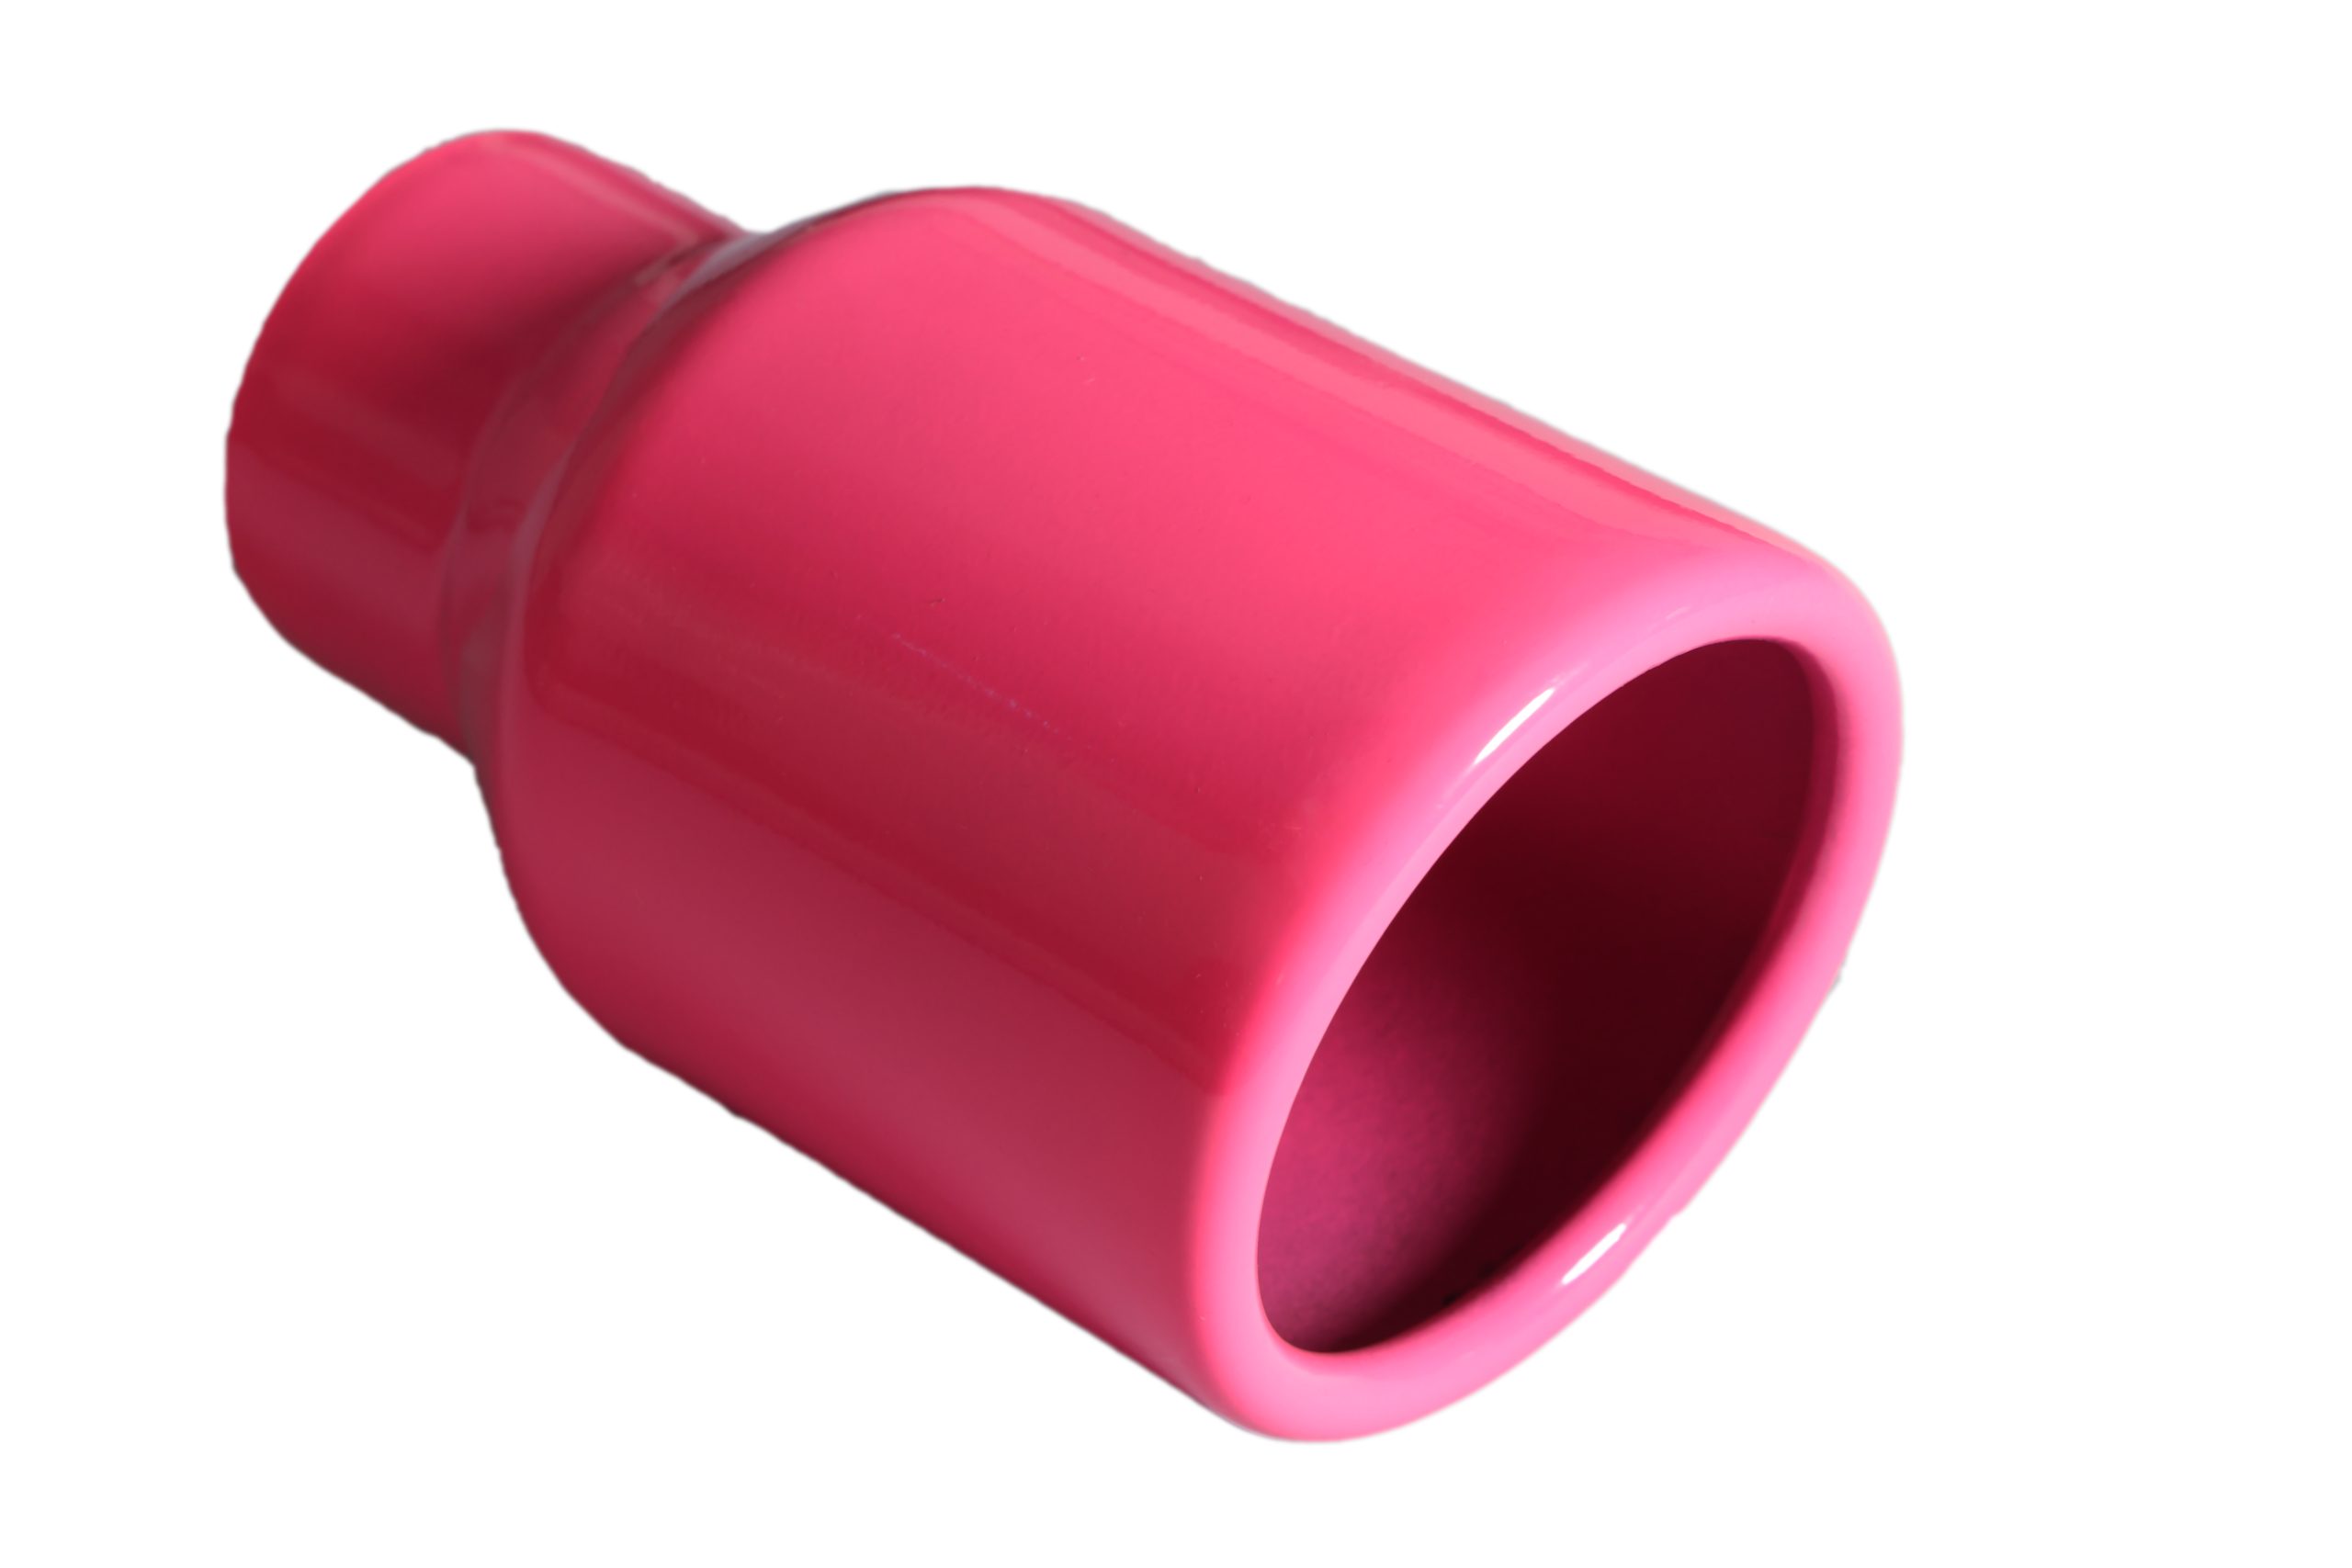 Powder Coat Pink Exhaust Tip T-819